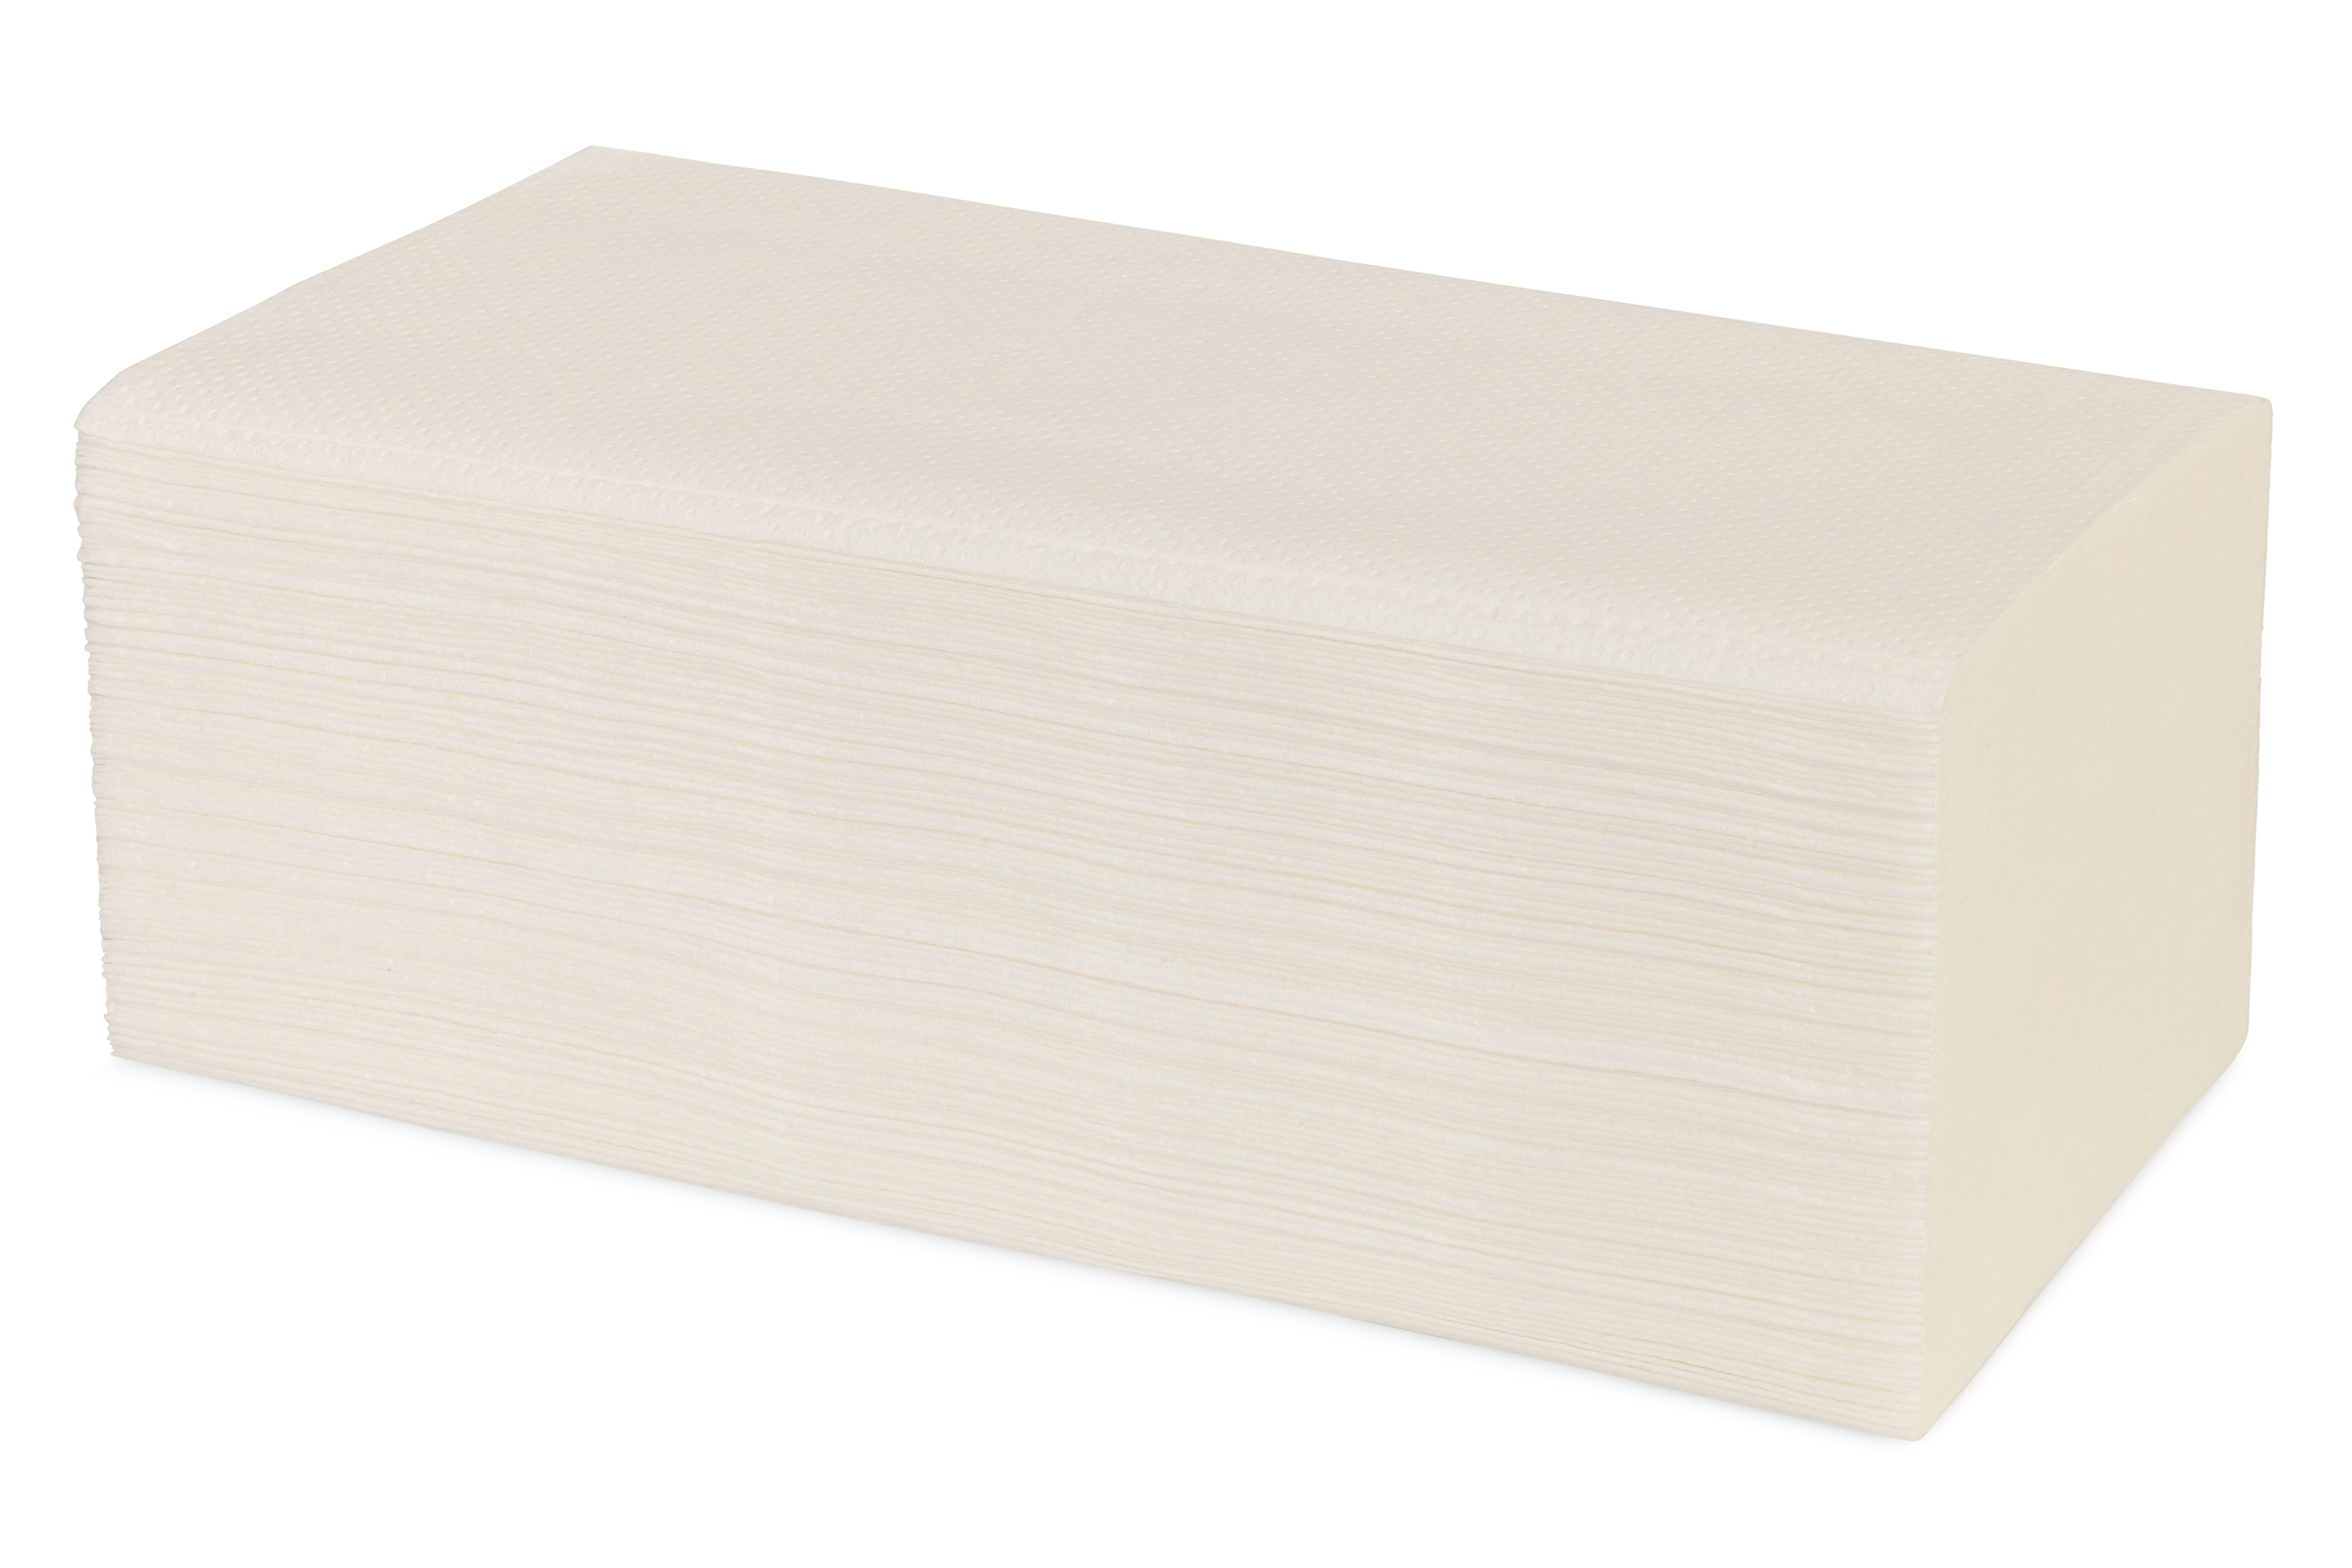 Falthandtücher Weiß, V-falz, 2-lagig, 25,0 x 23,0 cm, 3200 Blatt, Zellulose